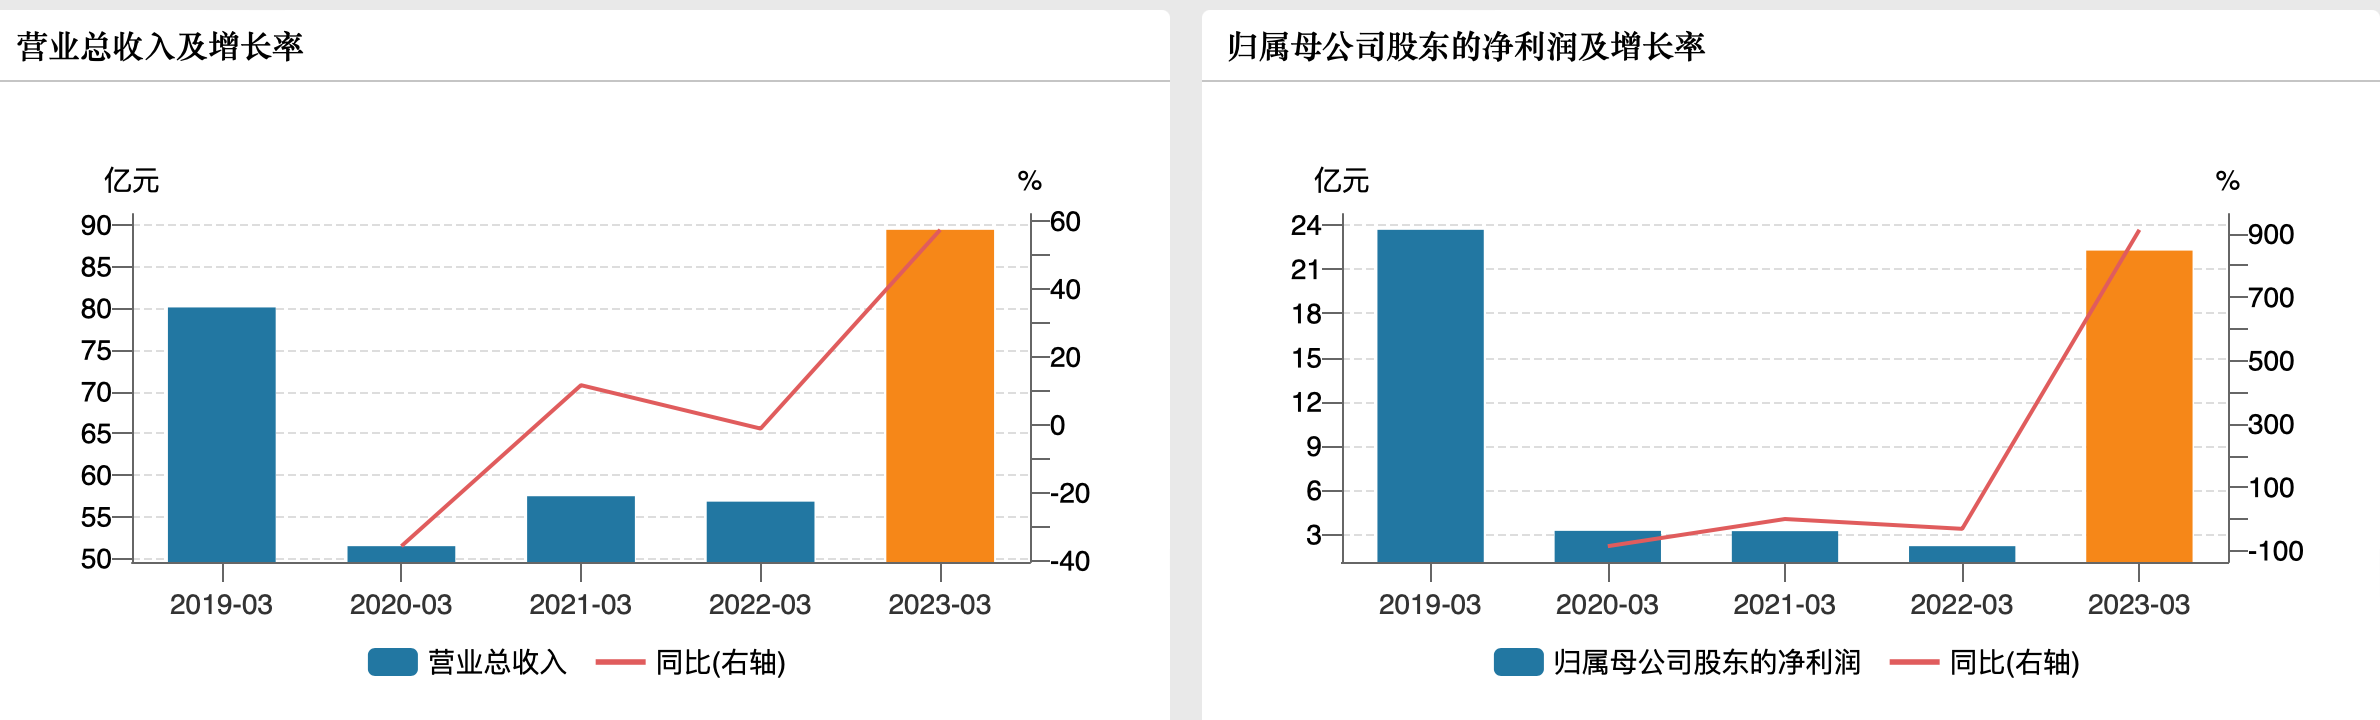 京沪高铁去年亏损近6亿 今年一季度净利暴增9倍恢复至疫情前水平